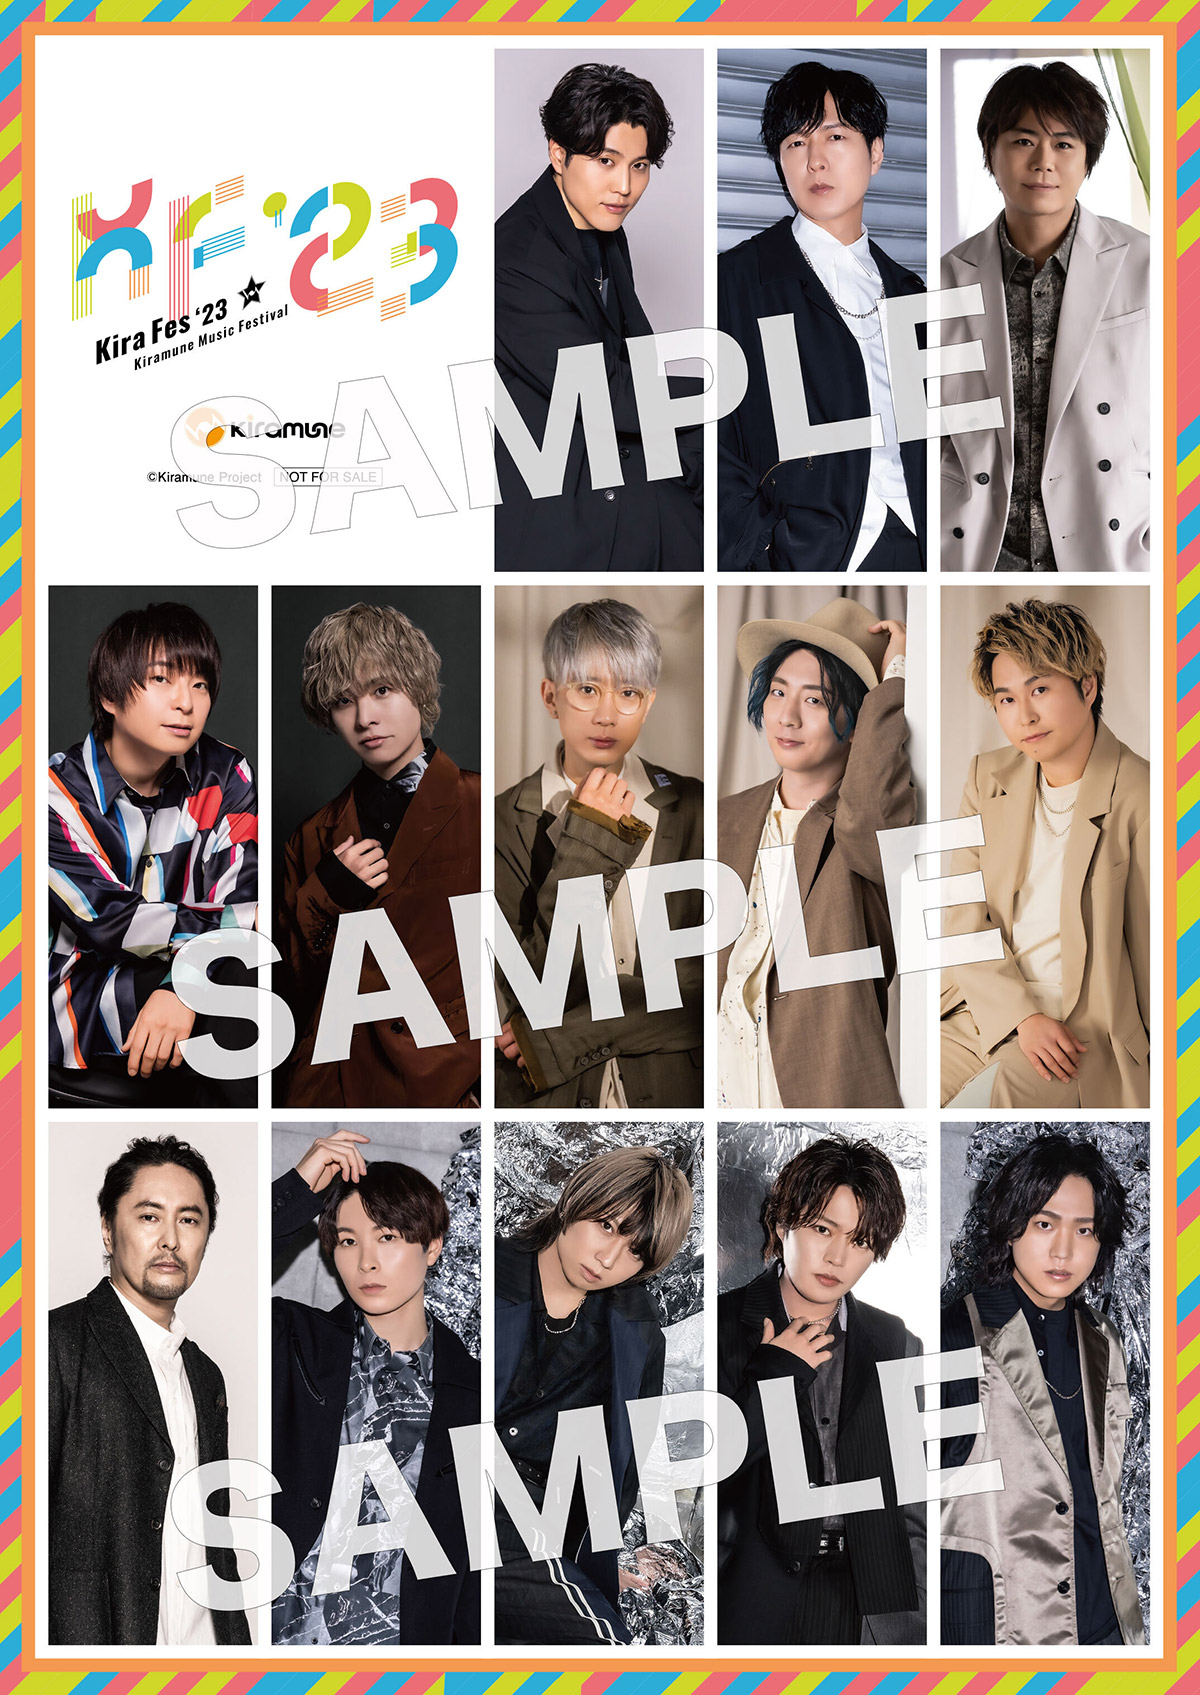 Kiramune Music Festival 2023 | Kiramune Official Site